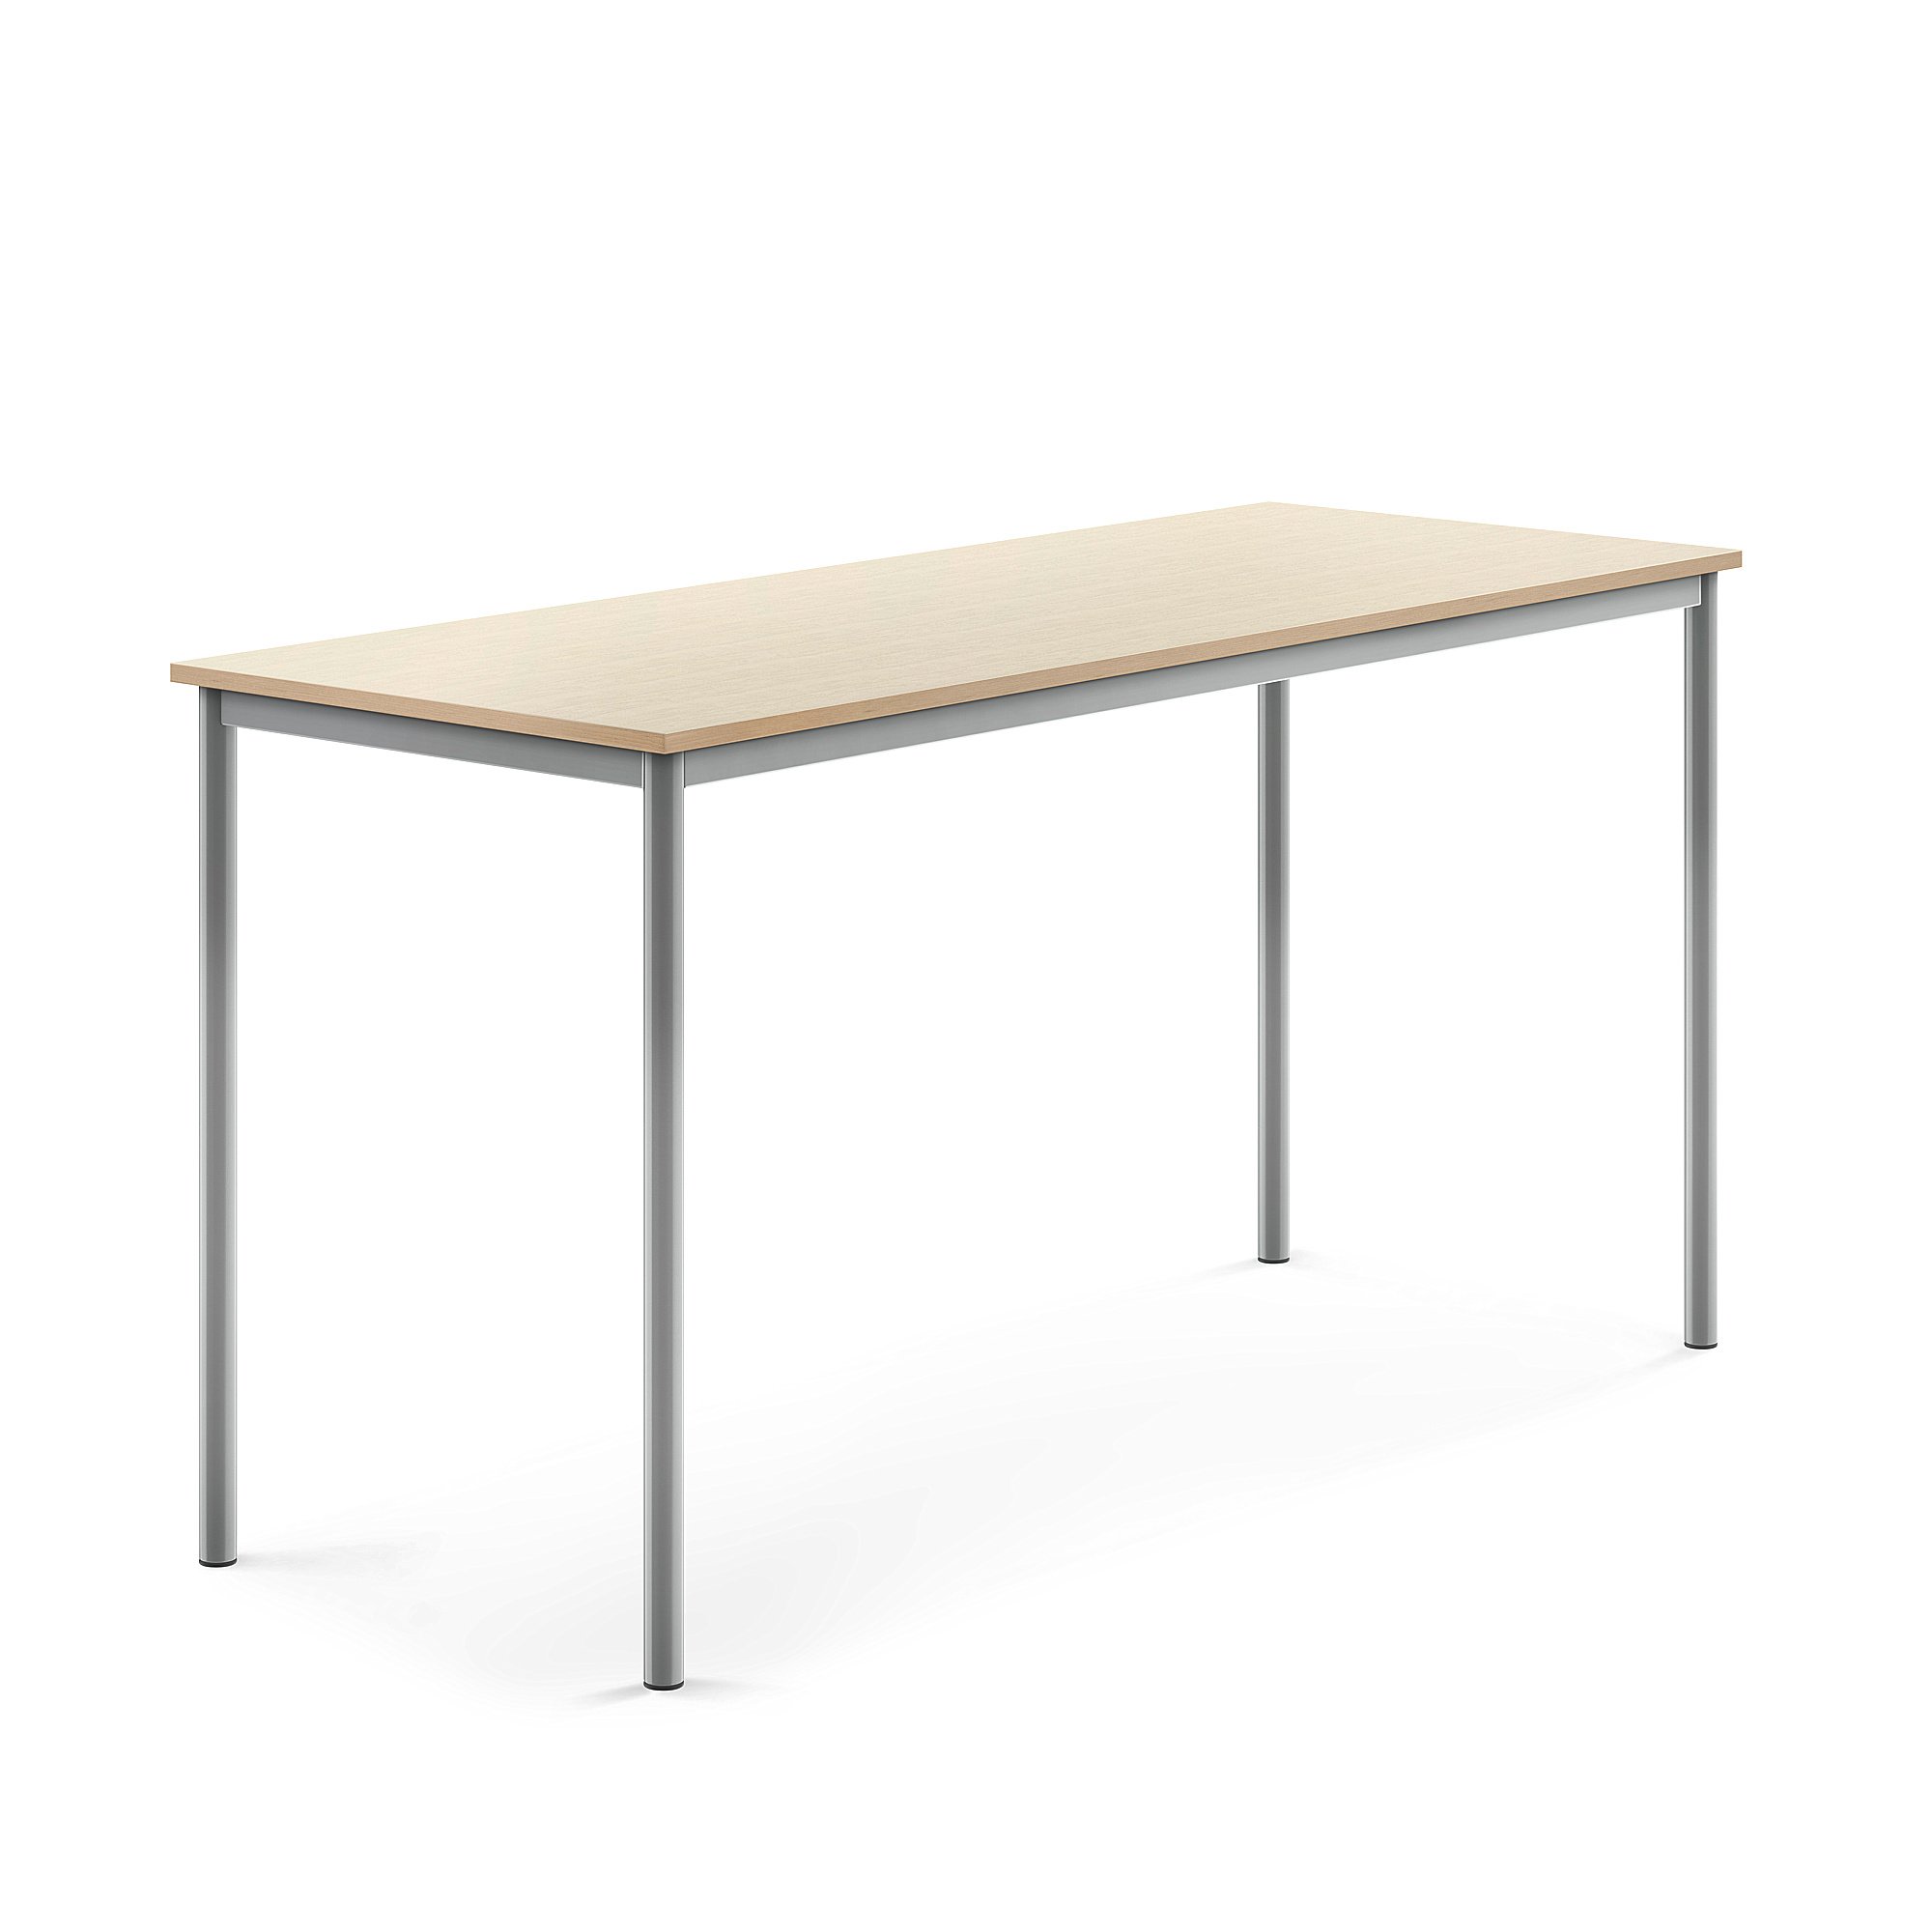 Stůl SONITUS, 1800x700x900 mm, stříbrné nohy, HPL deska tlumící hluk, bříza